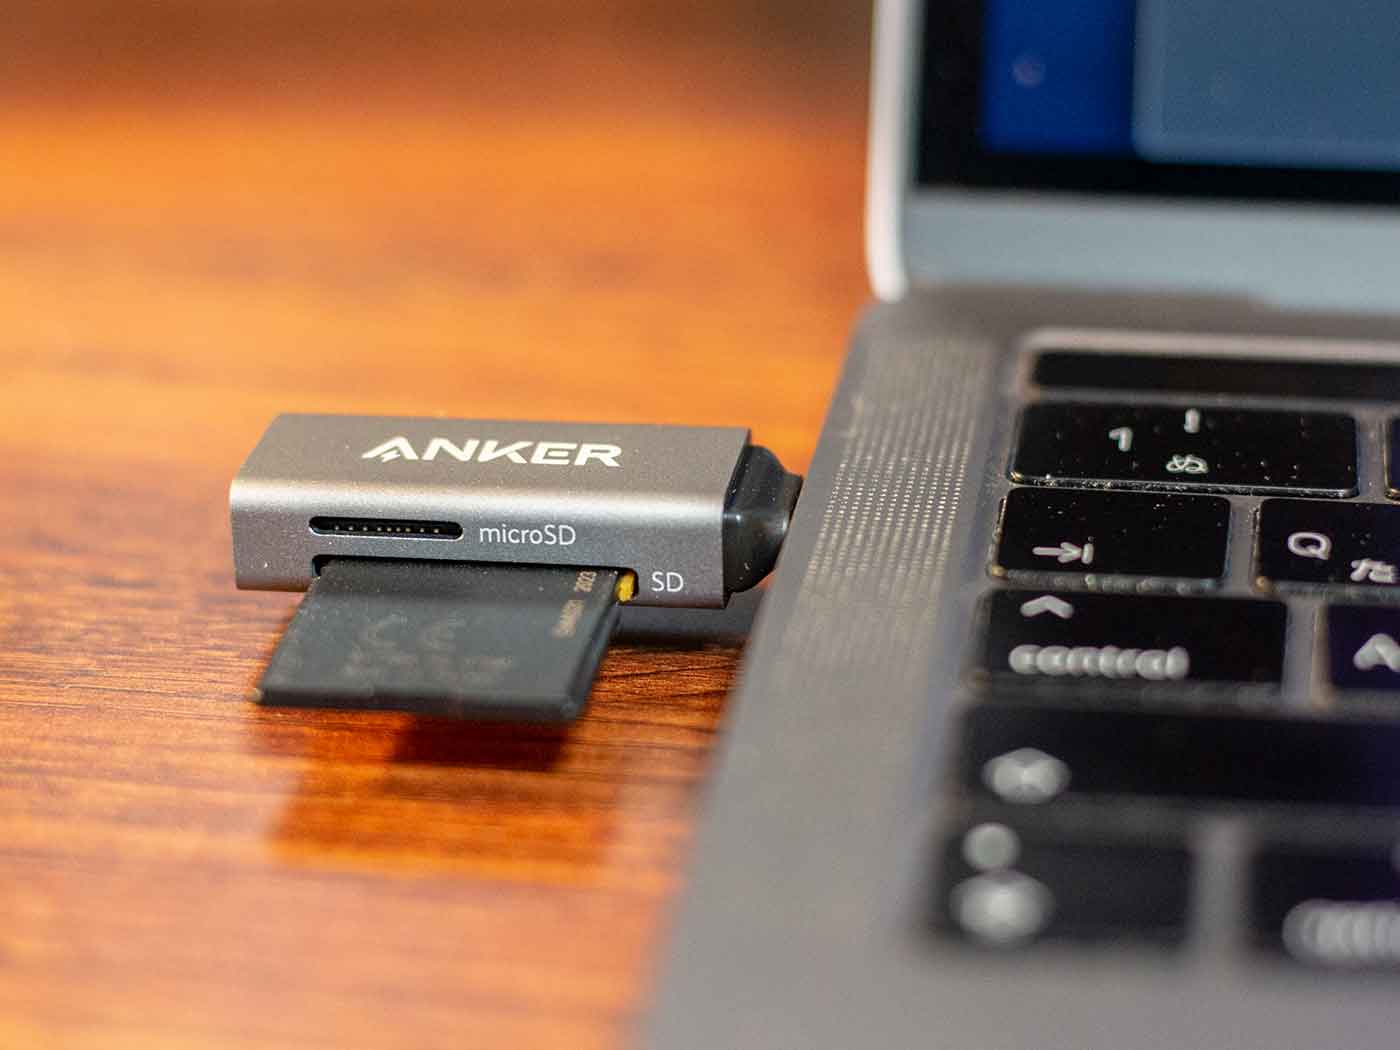 Anker USB-C Card Reader